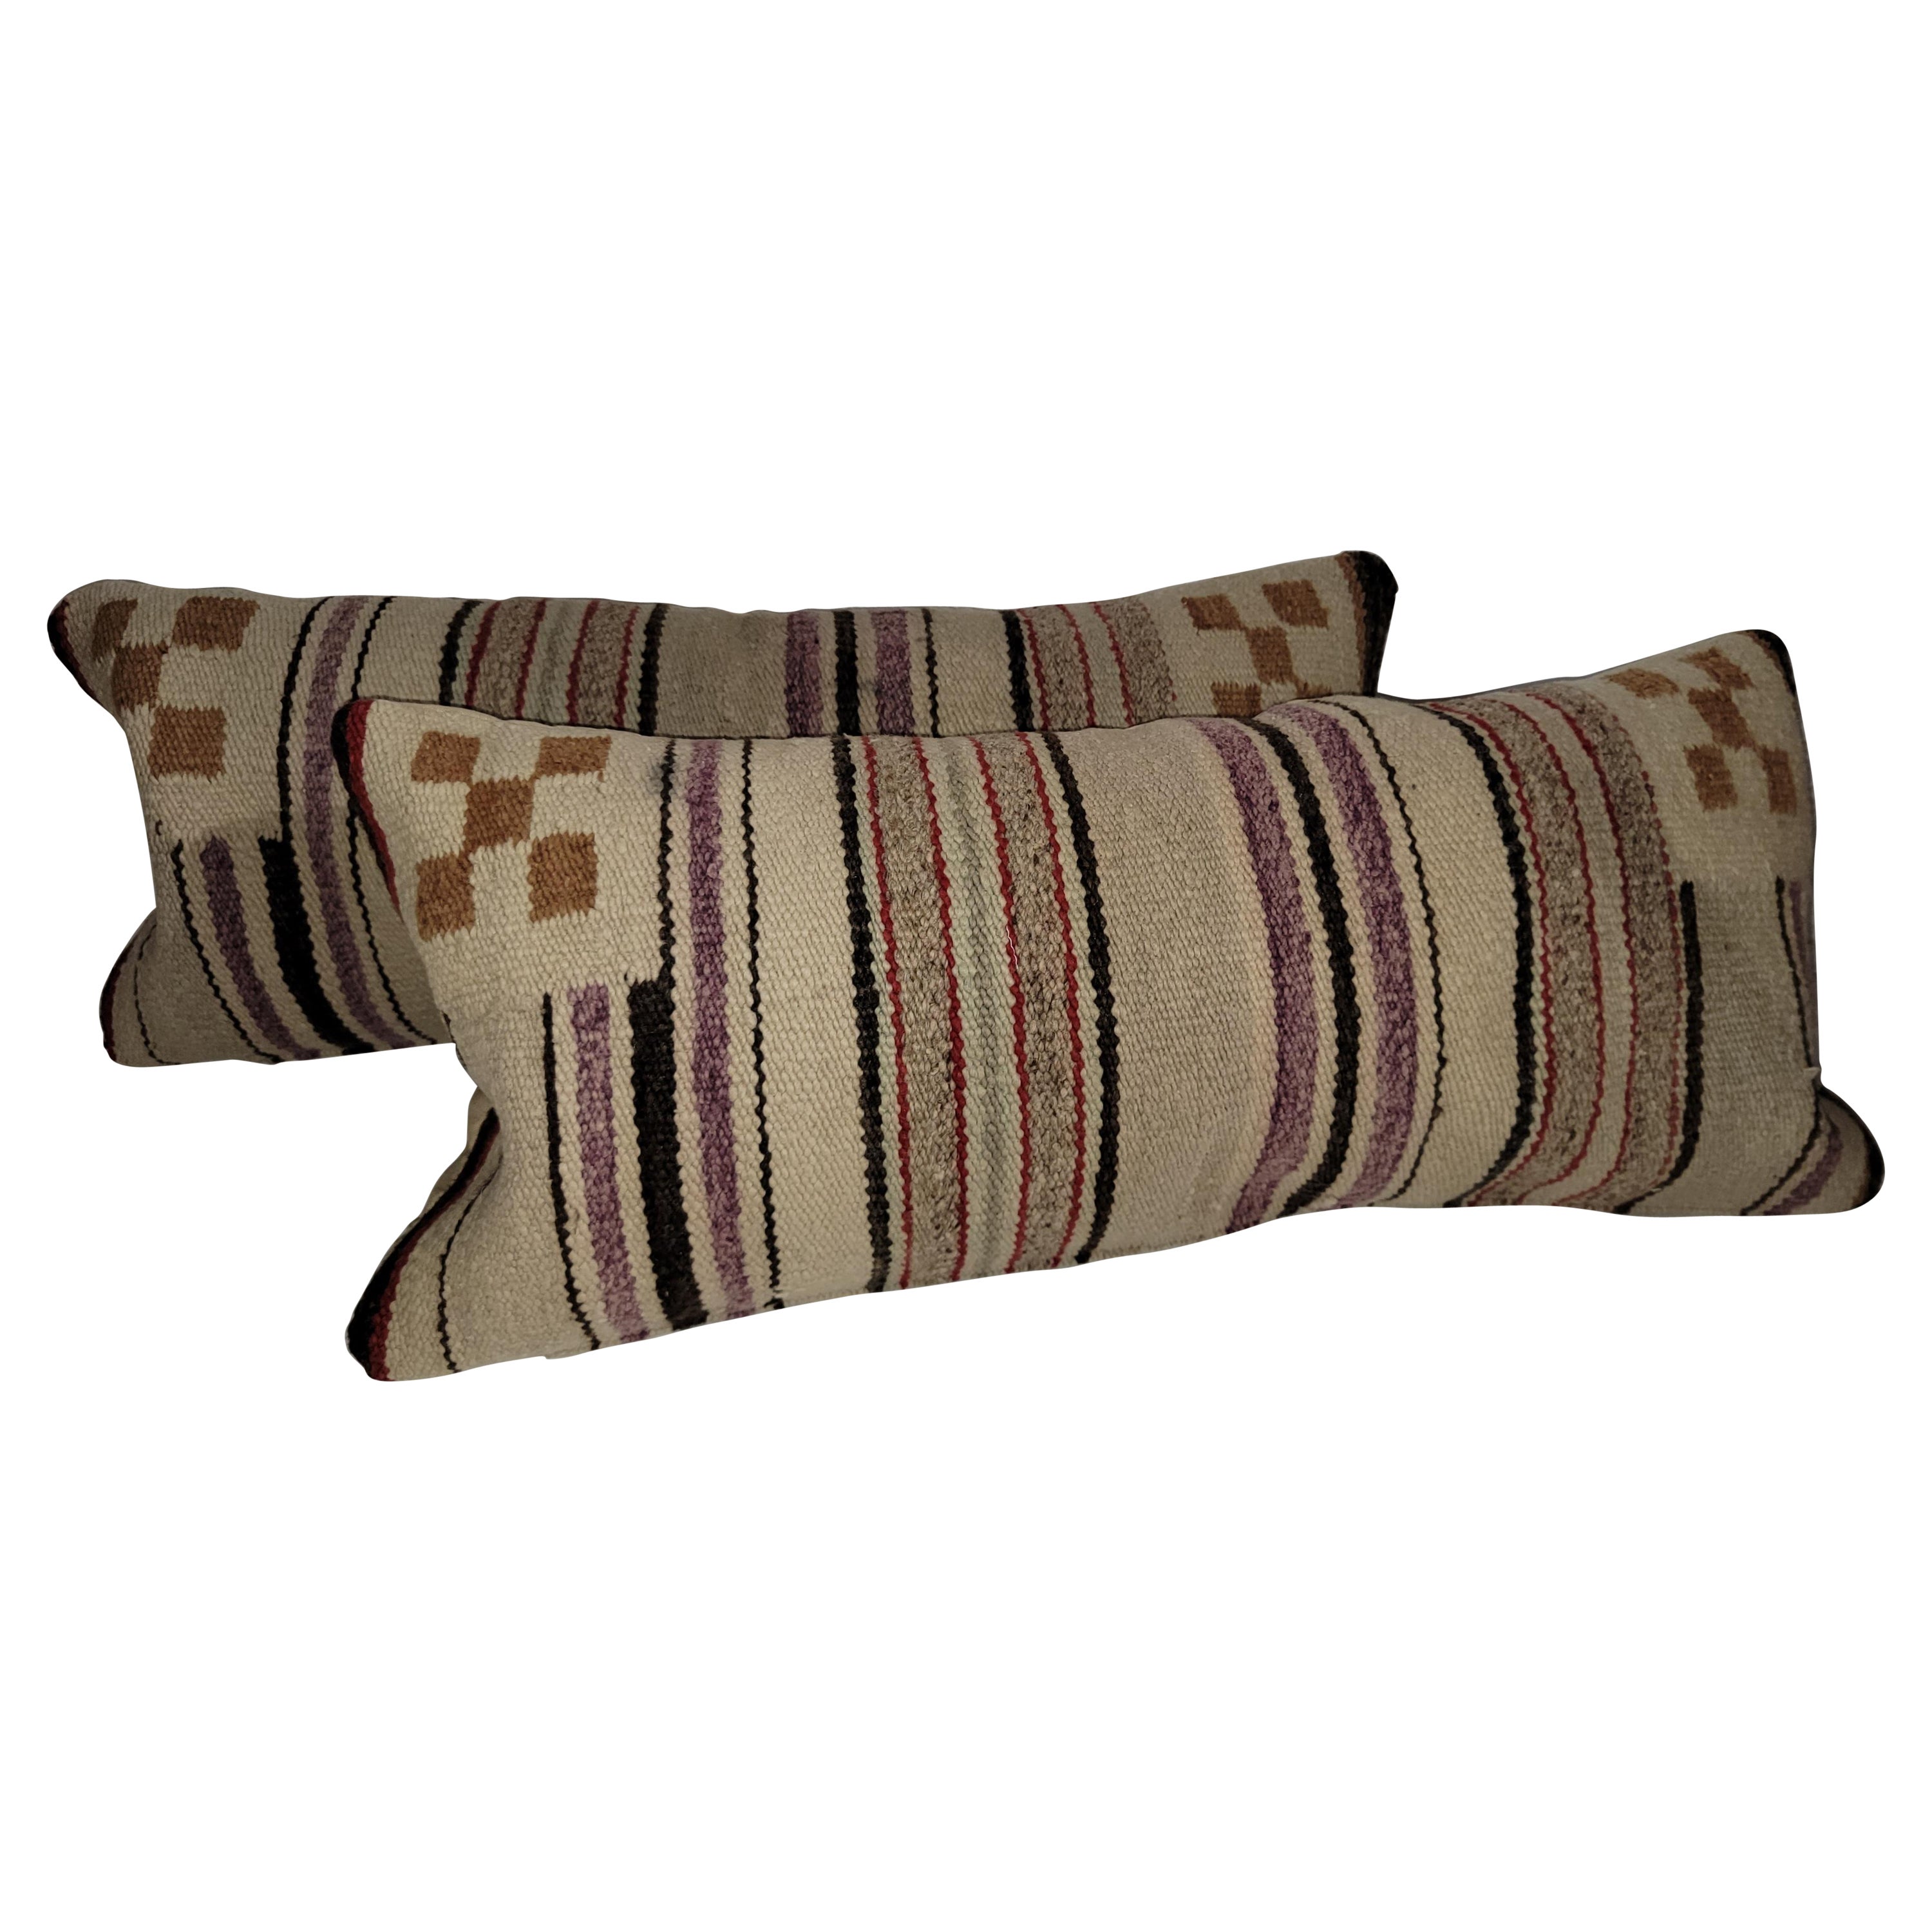 Navajo Indian Weaving Bolster Pillows, Pair